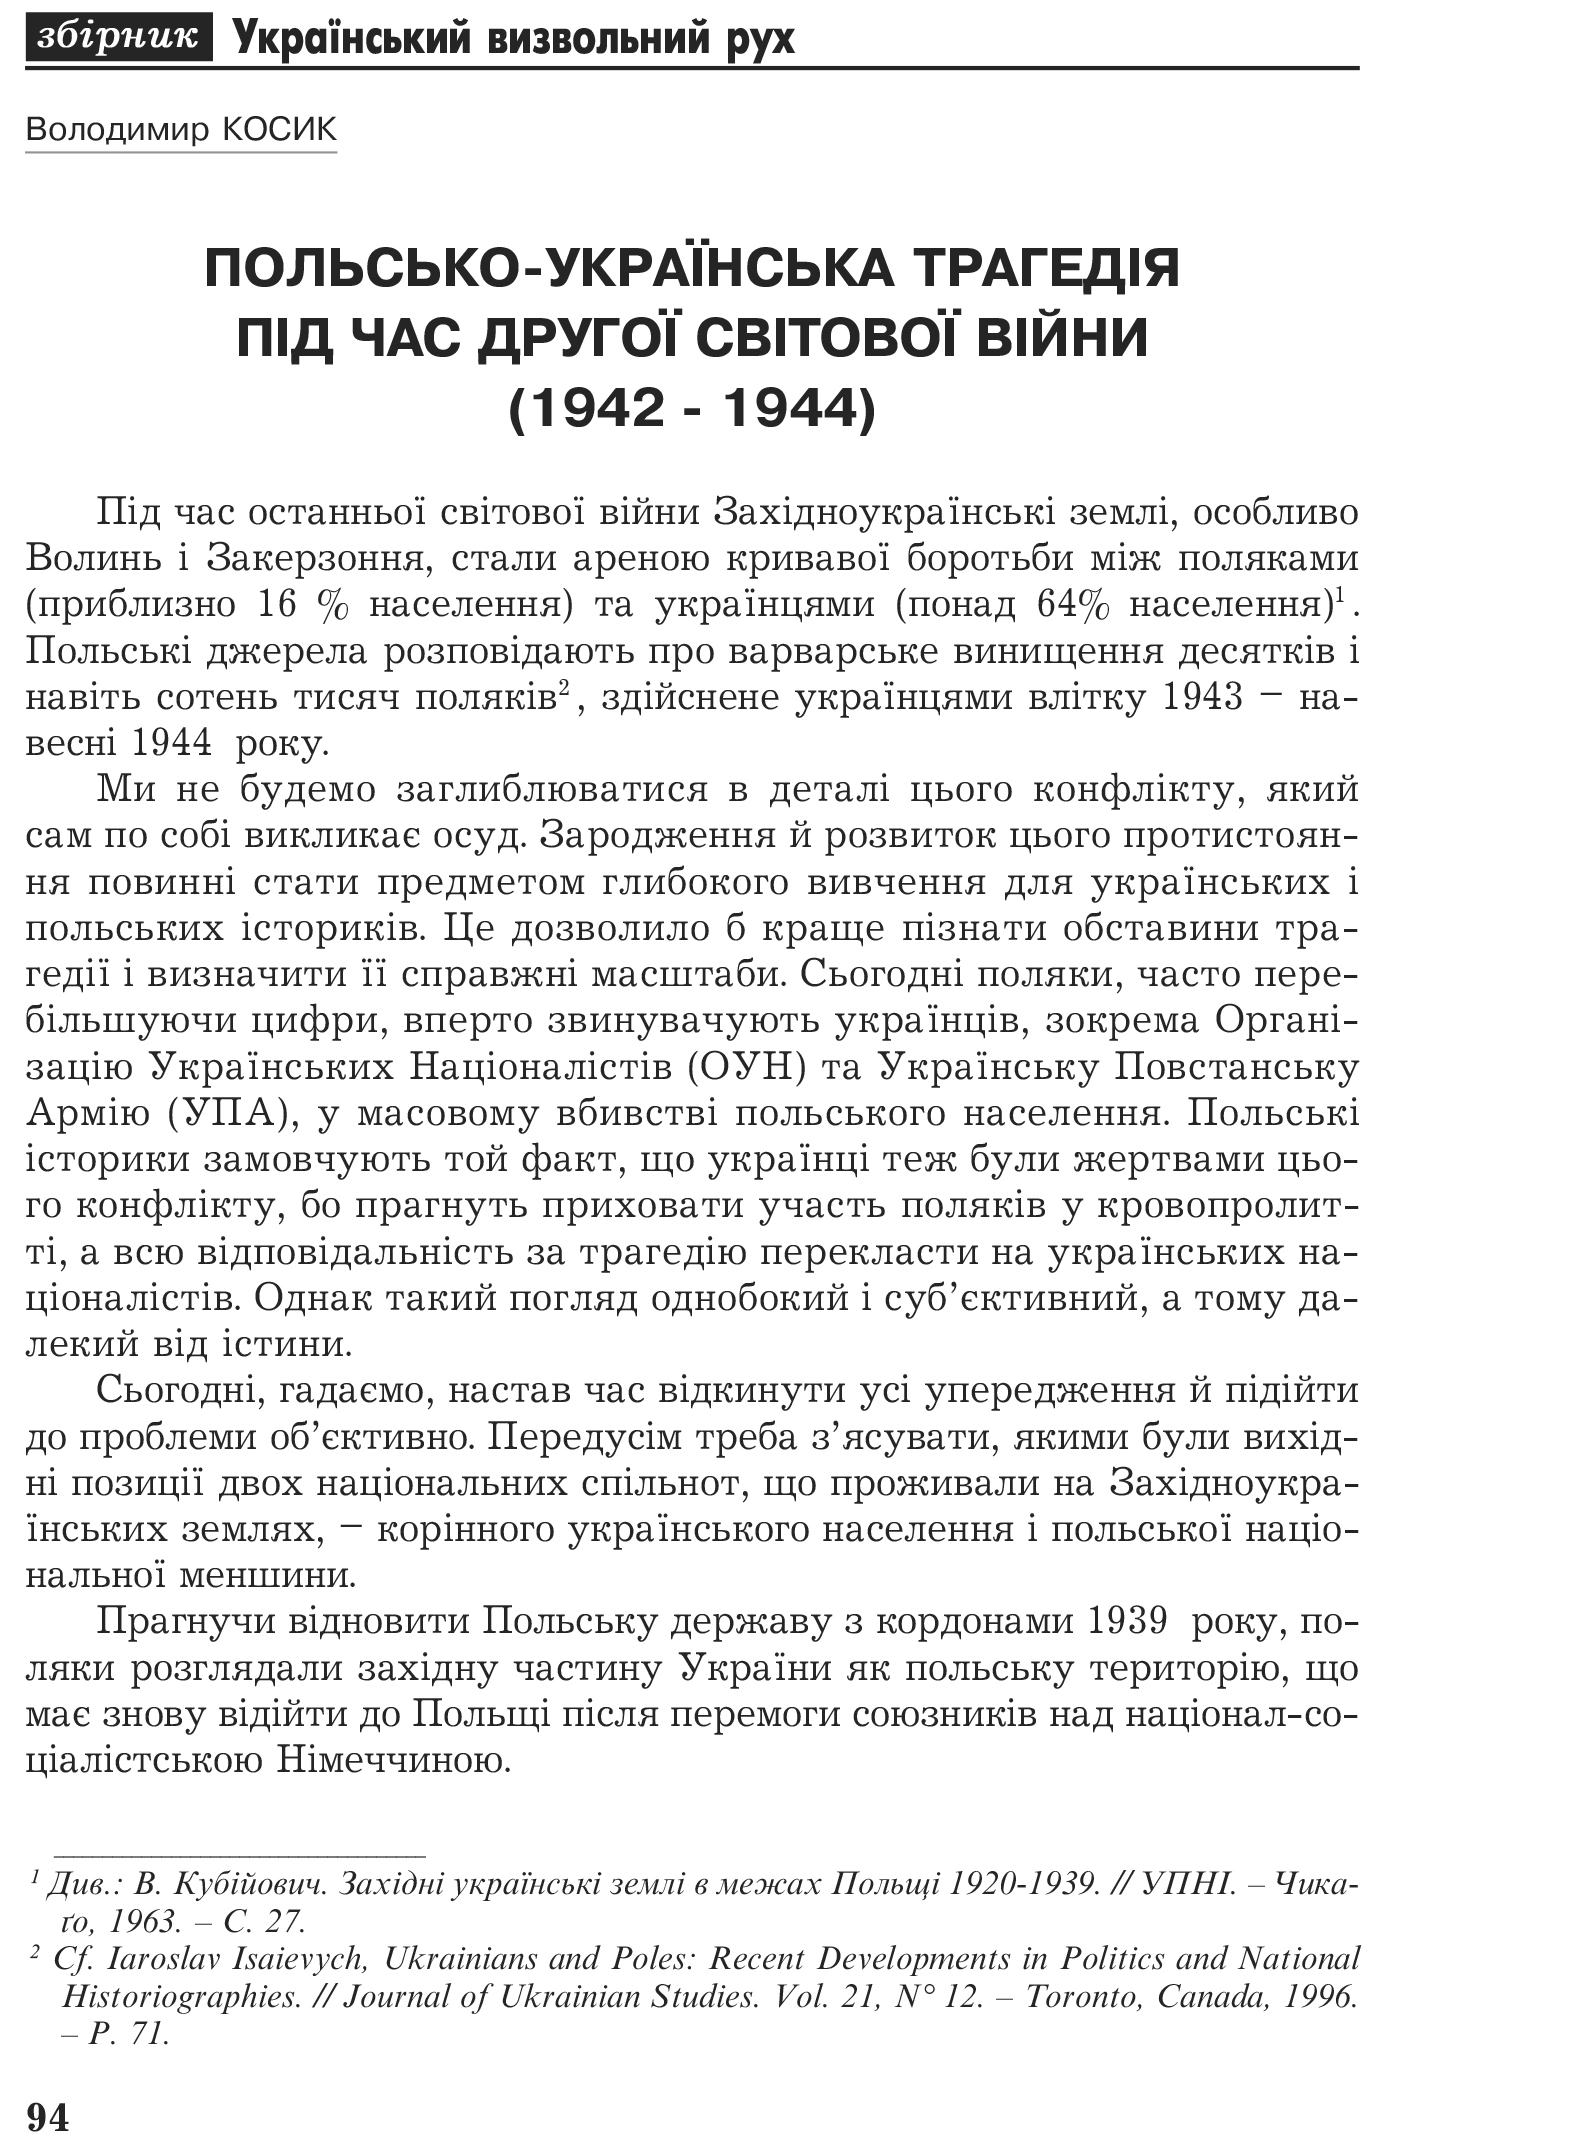 Український визвольний рух №2, ст. 94 - 107